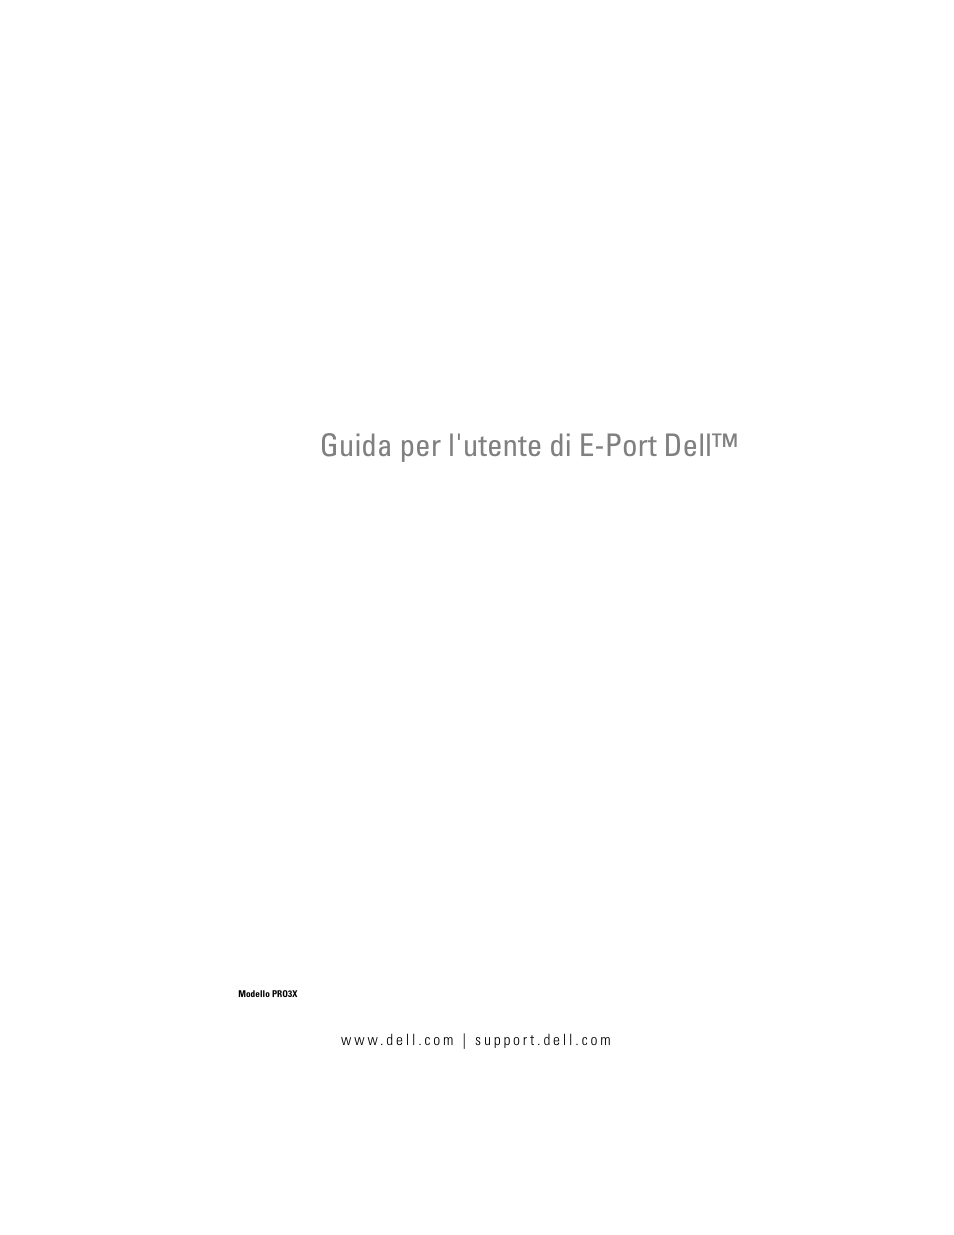 Dell E-Port Manuale d'uso | Pagine: 22